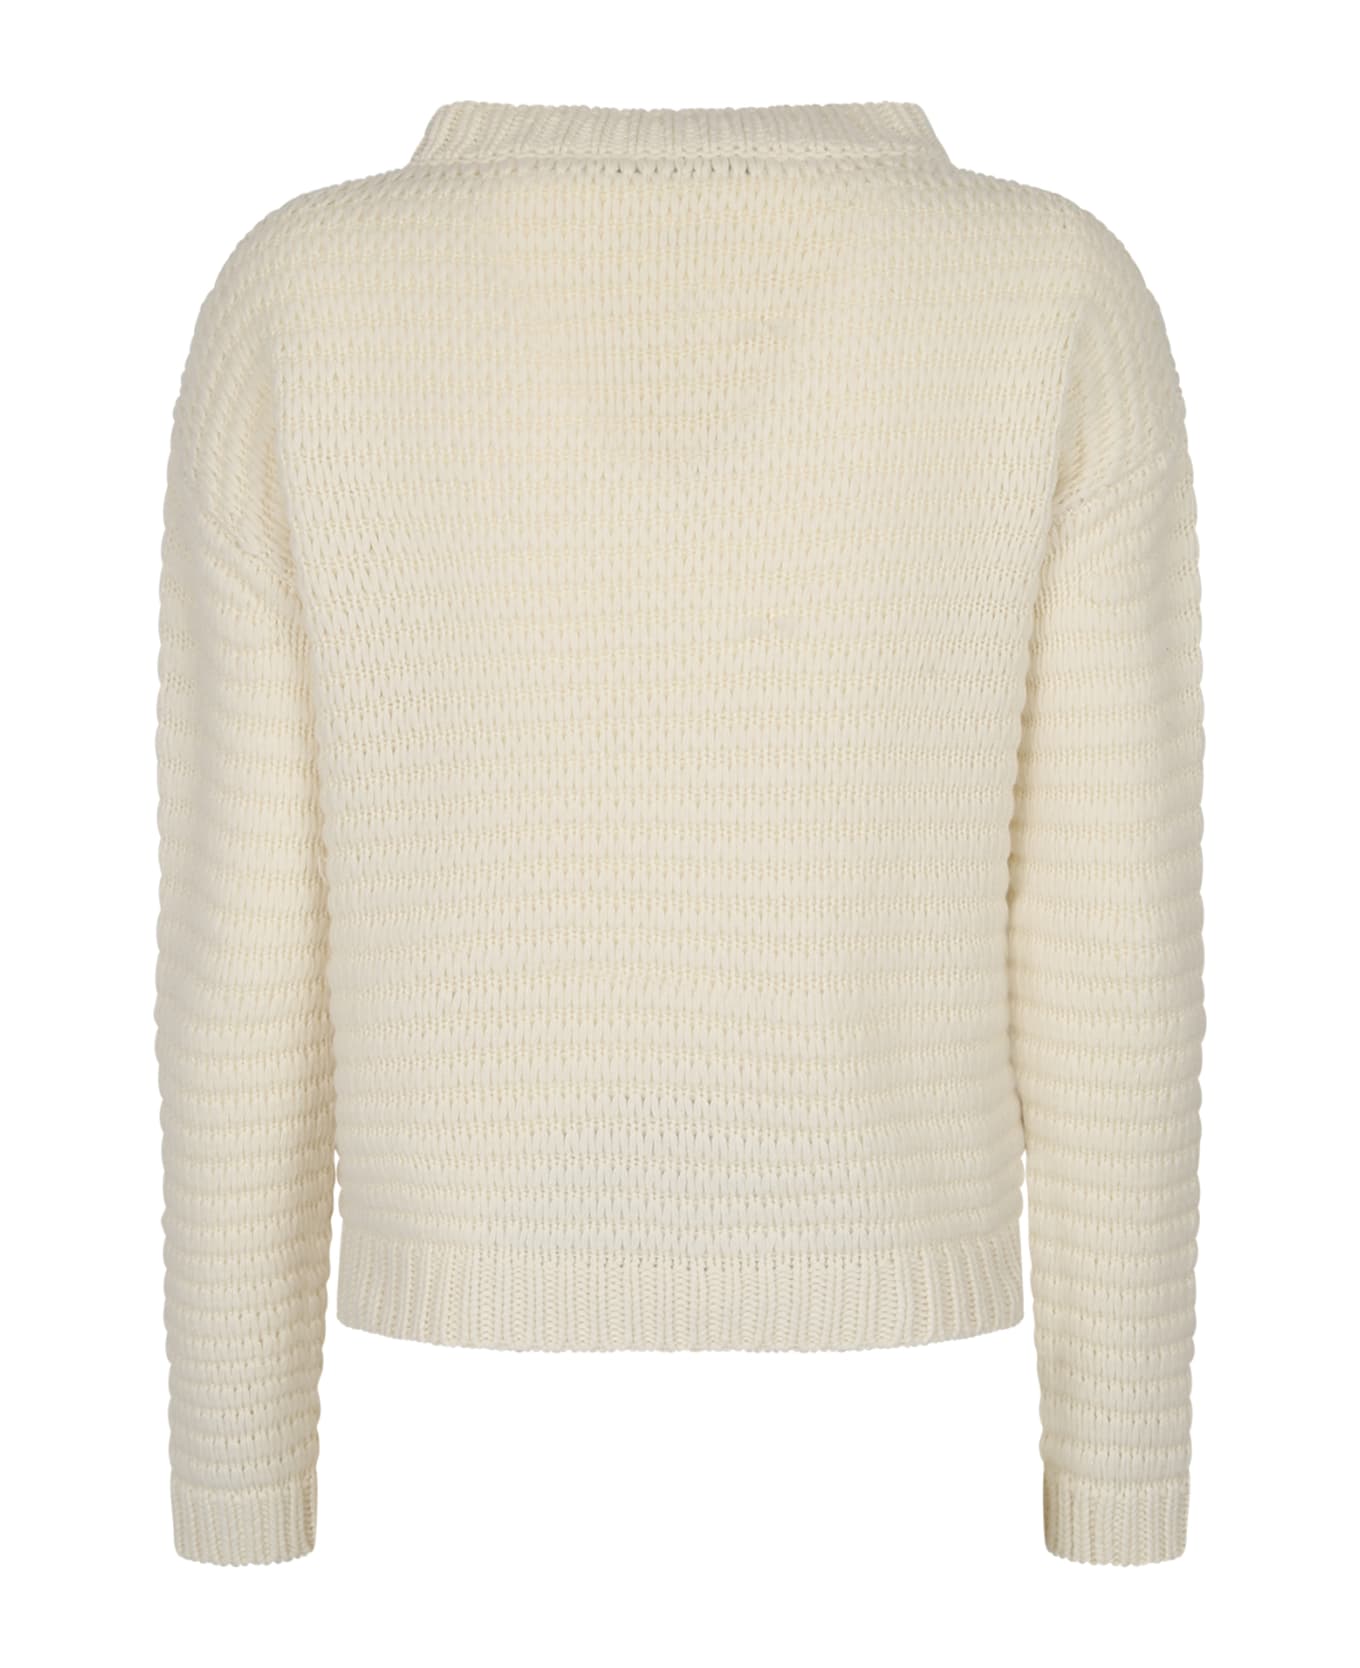 Fabiana Filippi Relaxed Fit Sweater - White ニットウェア